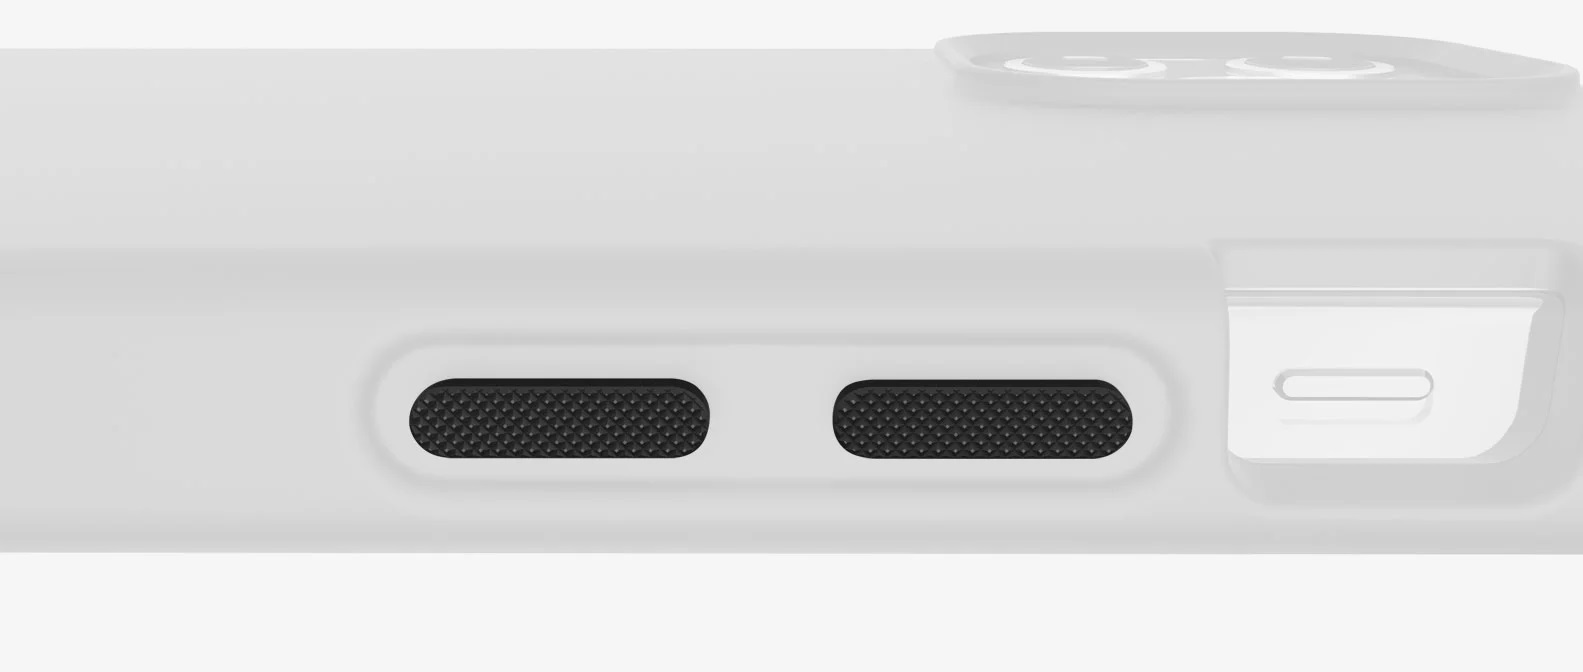 Odolné pouzdro ITSKINS Hybrid Silk 3m pro Apple iPhone 12 Pro Max, modrá